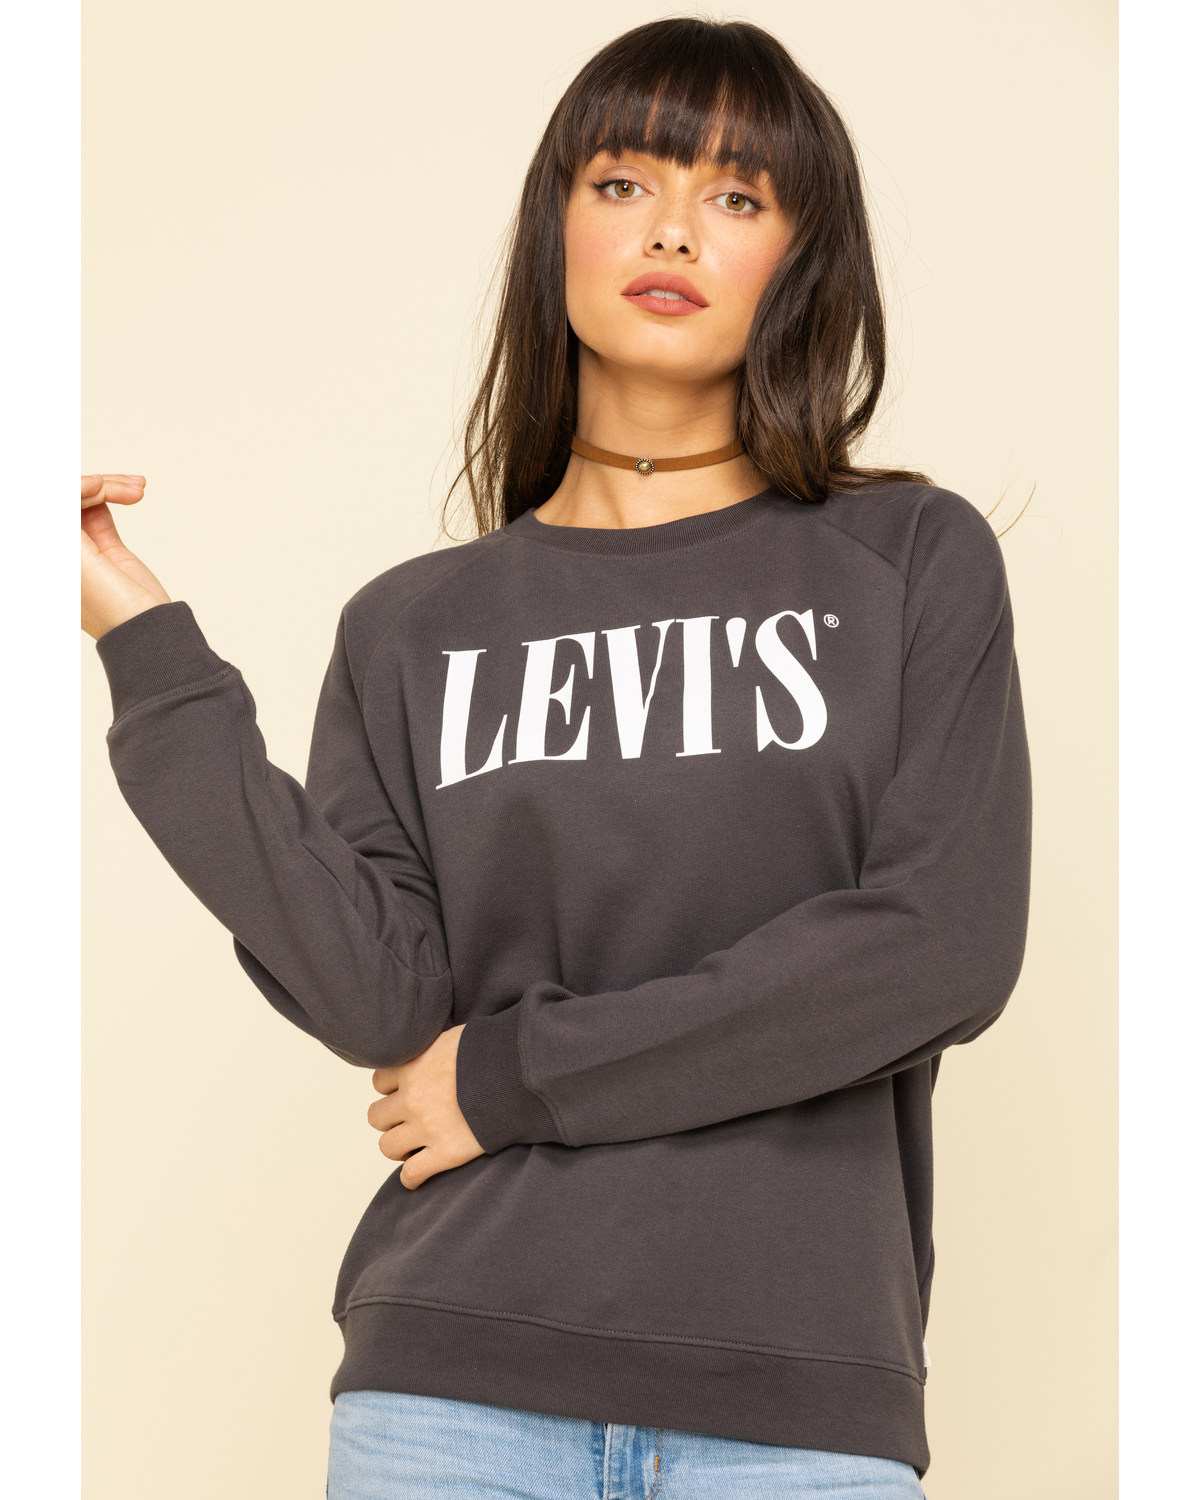 levi's grey women's sweatshirt